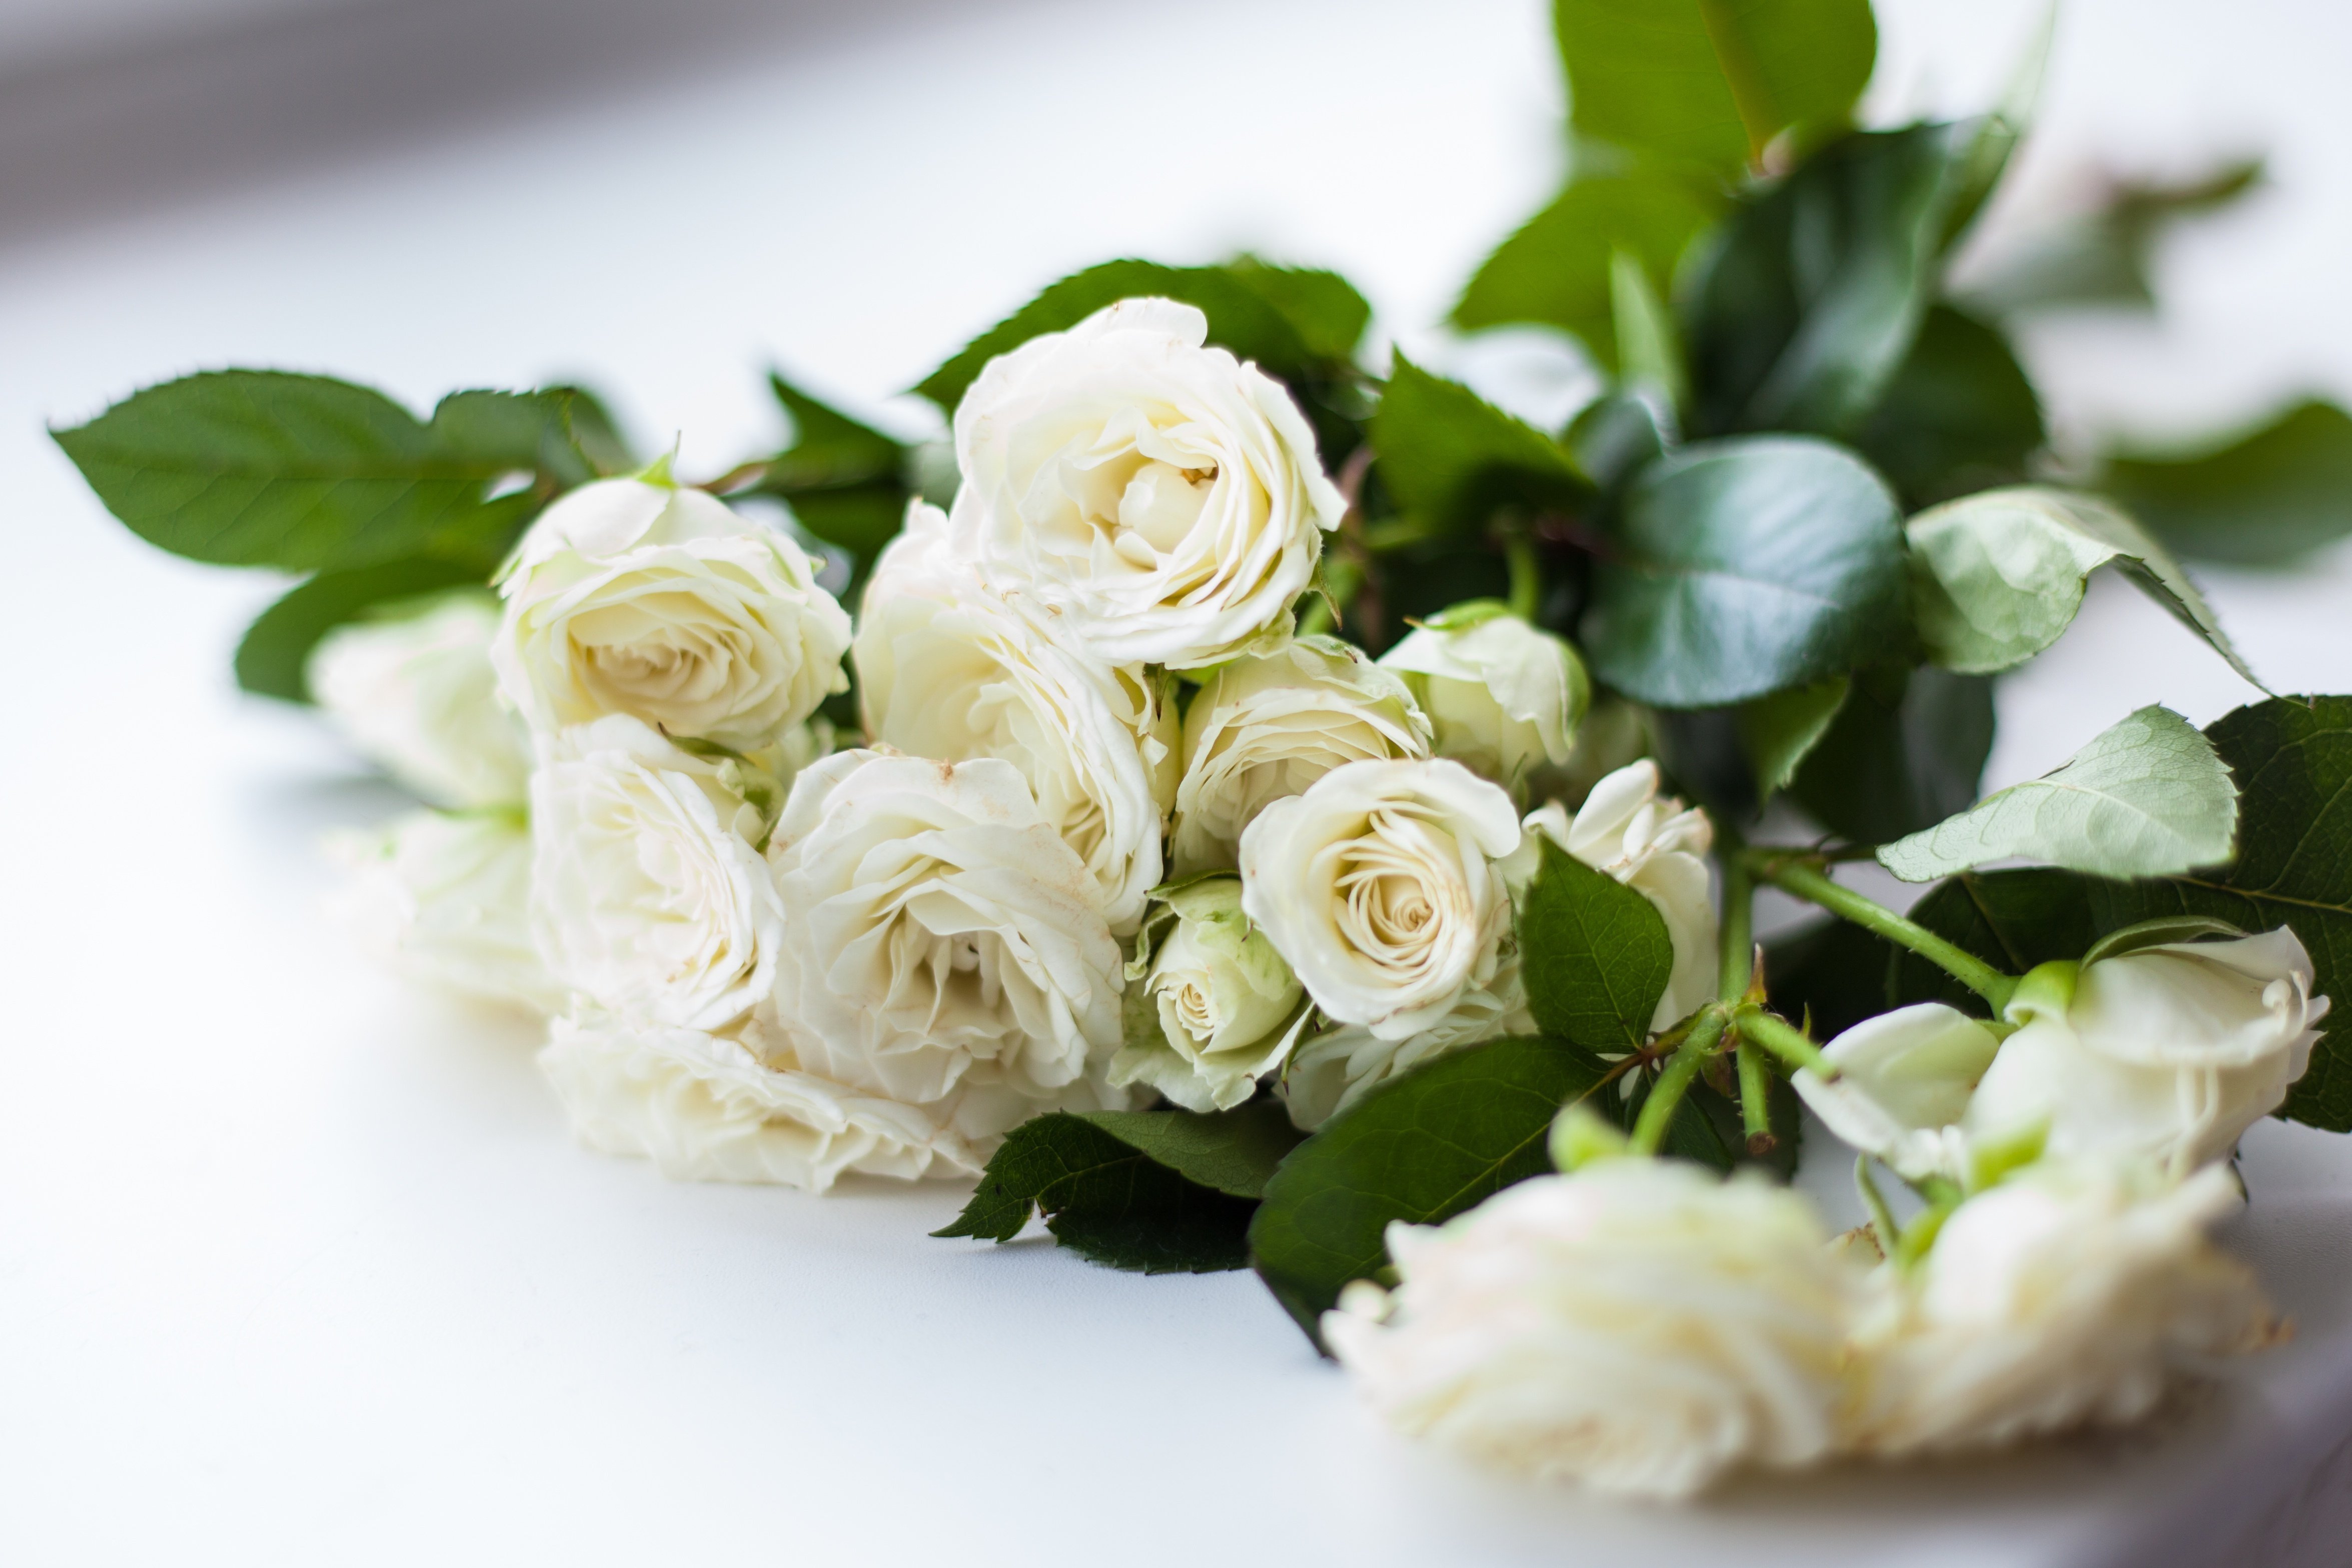 К чему снится букеты роз женщине. Вайт Роуз букет. Белые кустовые розы. Красивый букет белых роз.